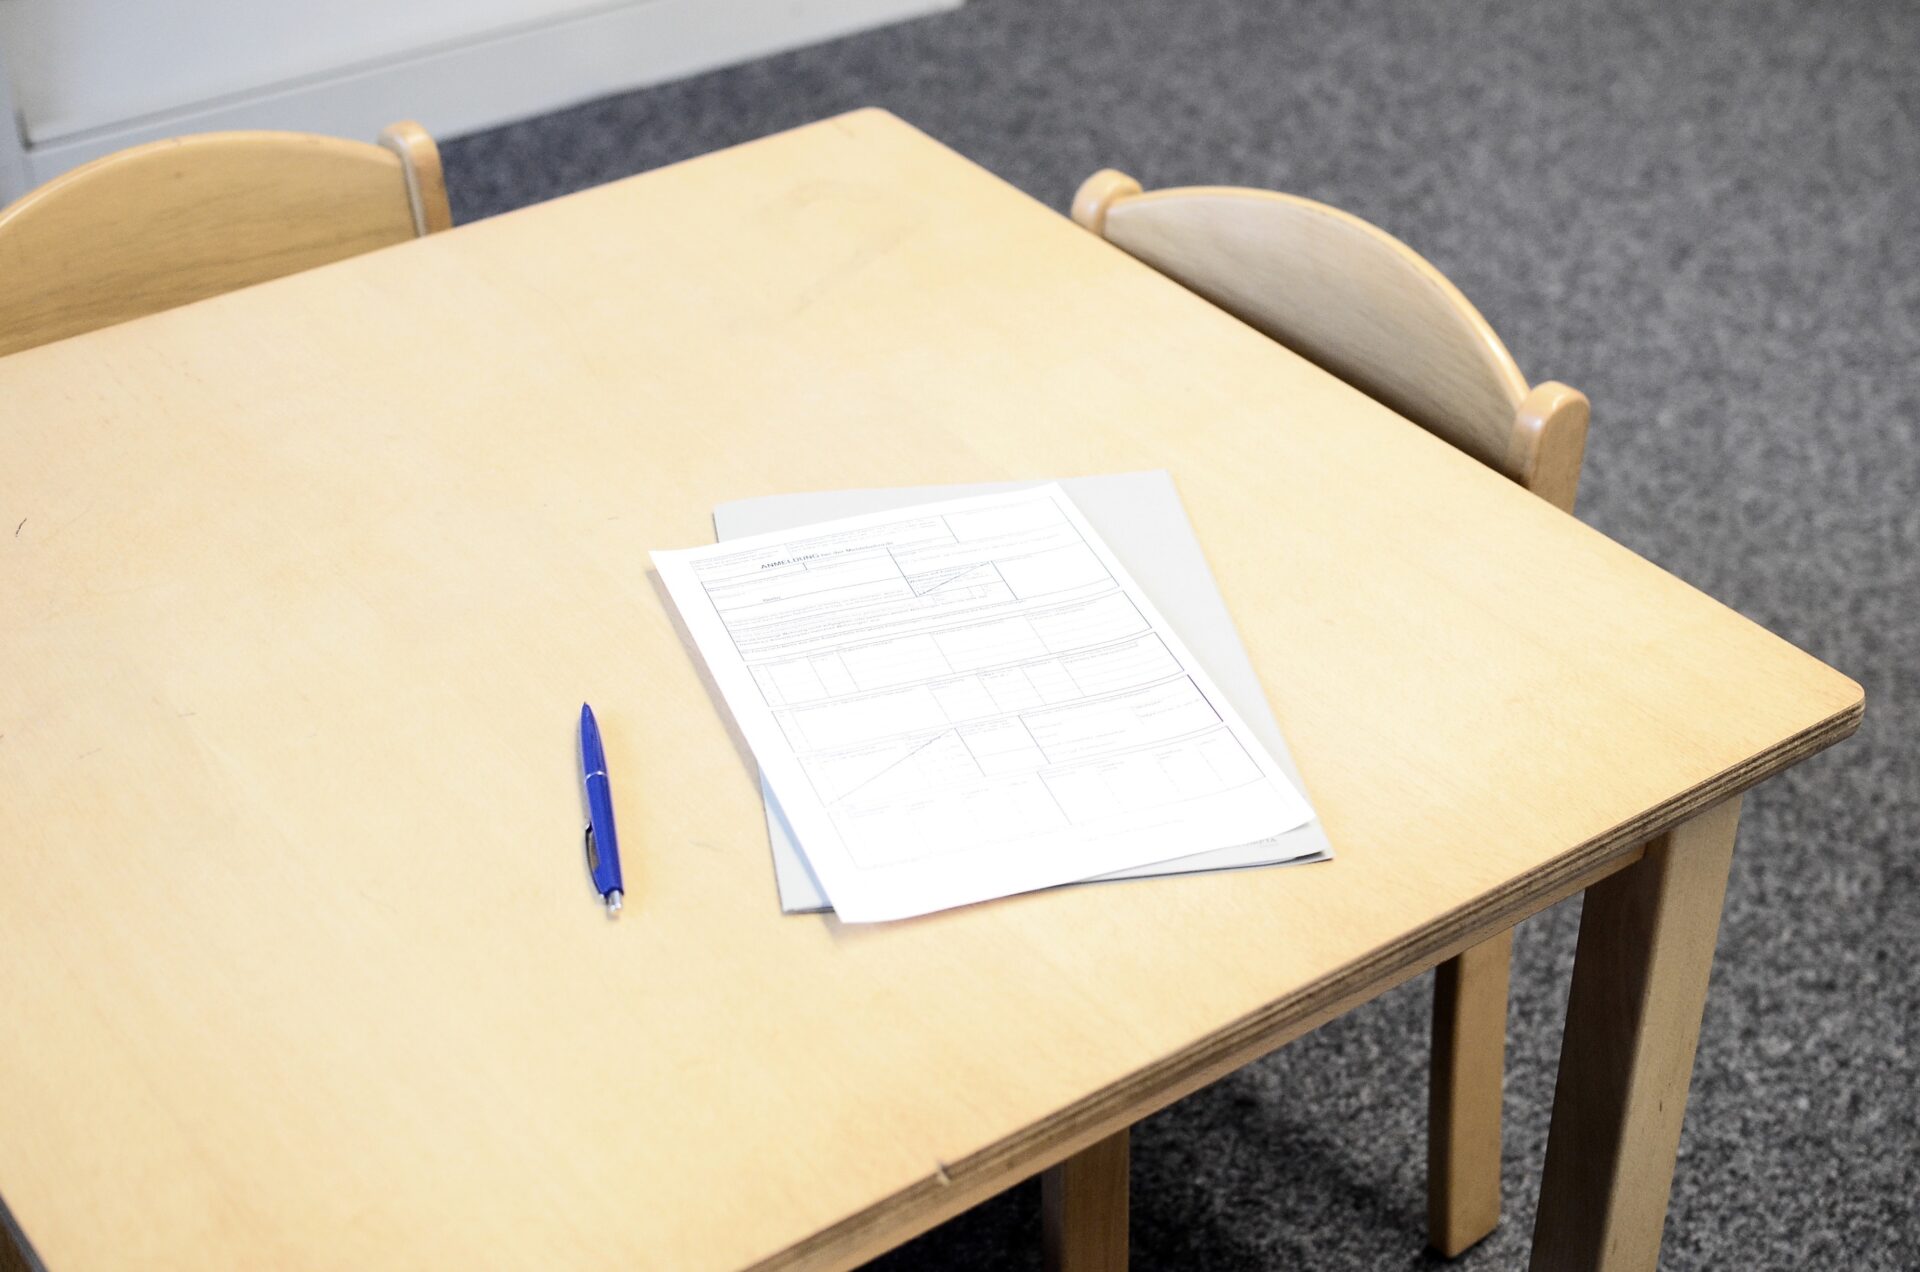 szkolny stolik z arkuszem sprawdzianu i długopisem